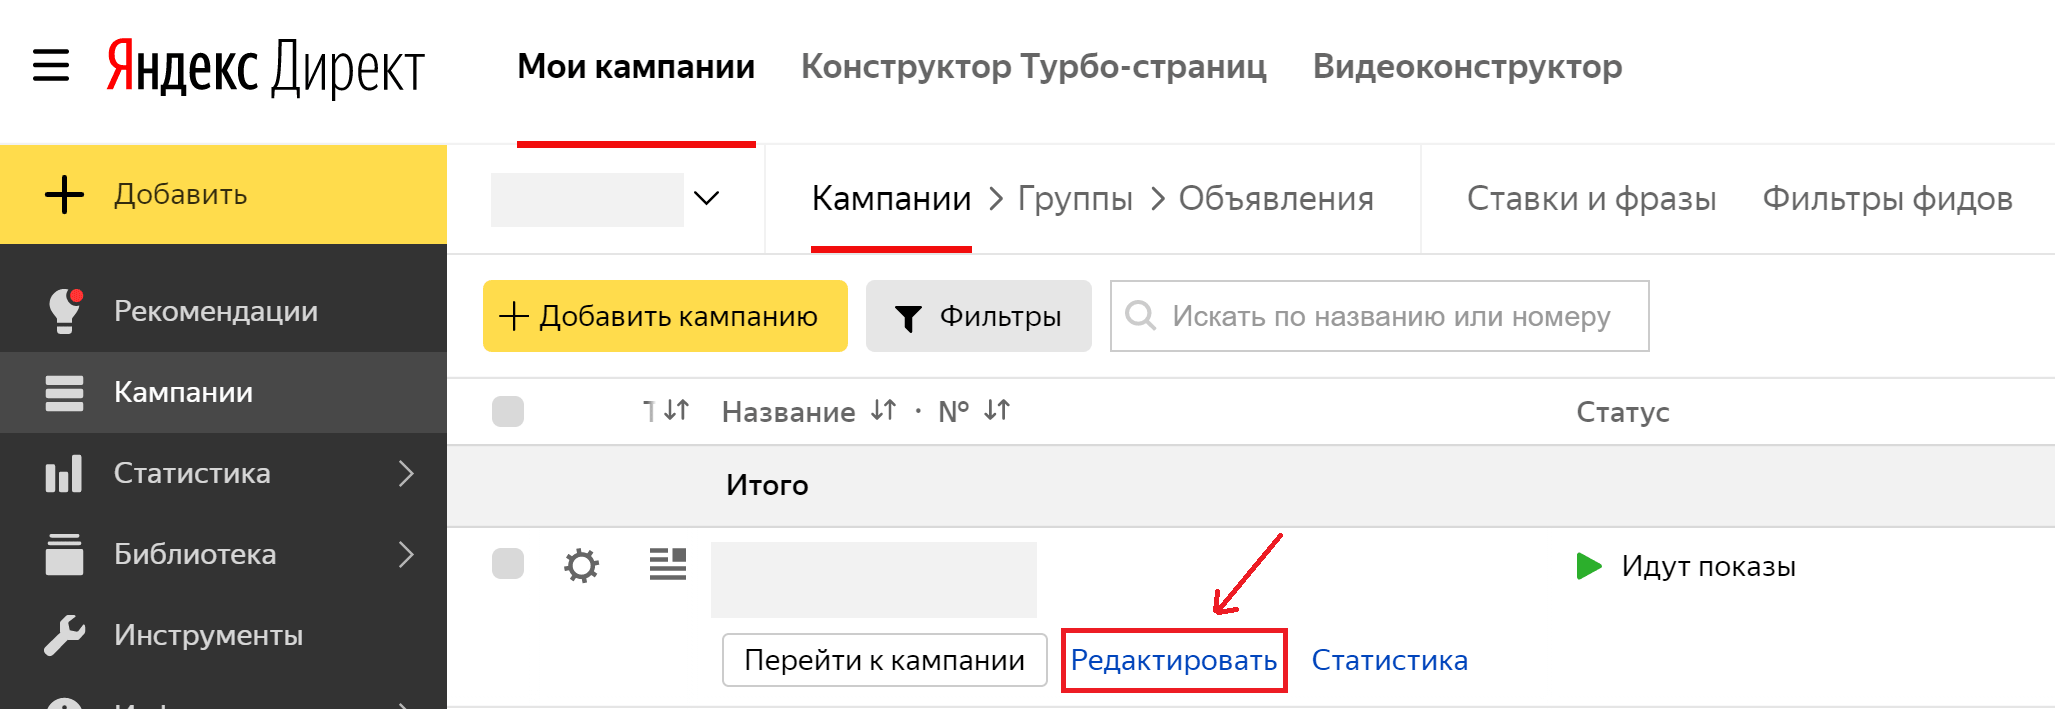 Скликивание в Яндекс Директ - Как защититься?